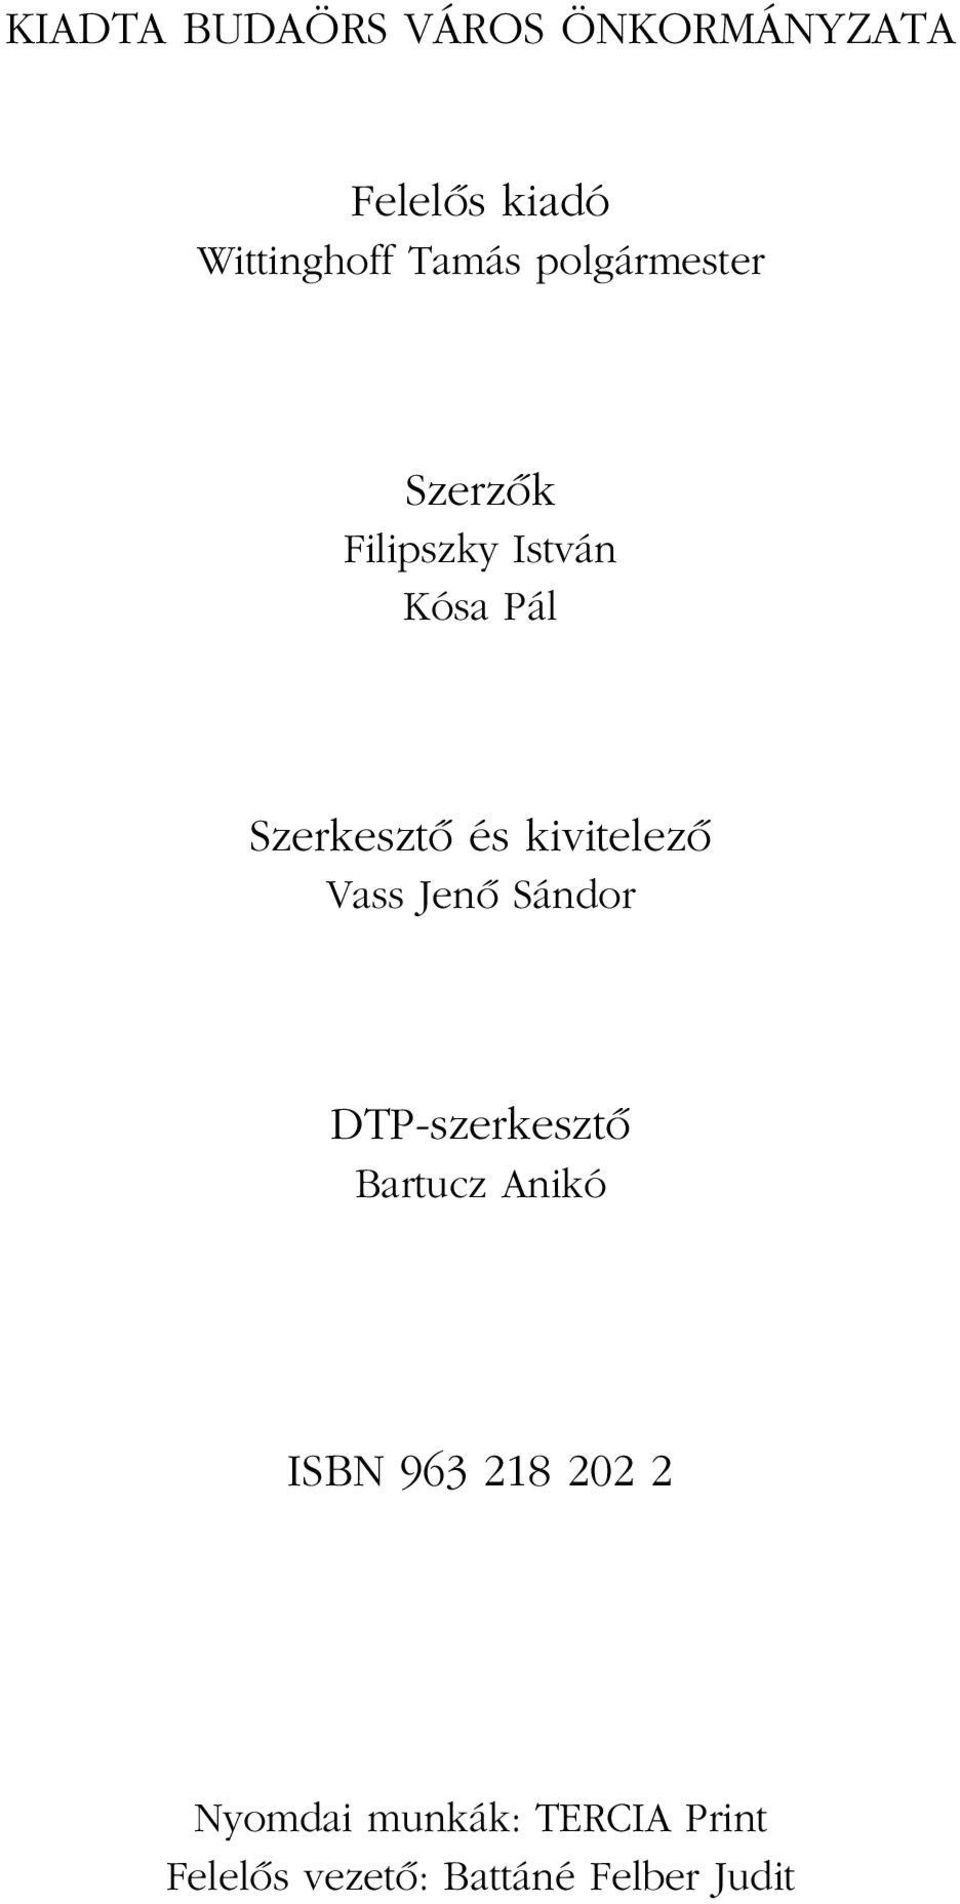 kivitelezô Vass Jenô Sándor DTP-szerkesztô Bartucz Anikó ISBN 963